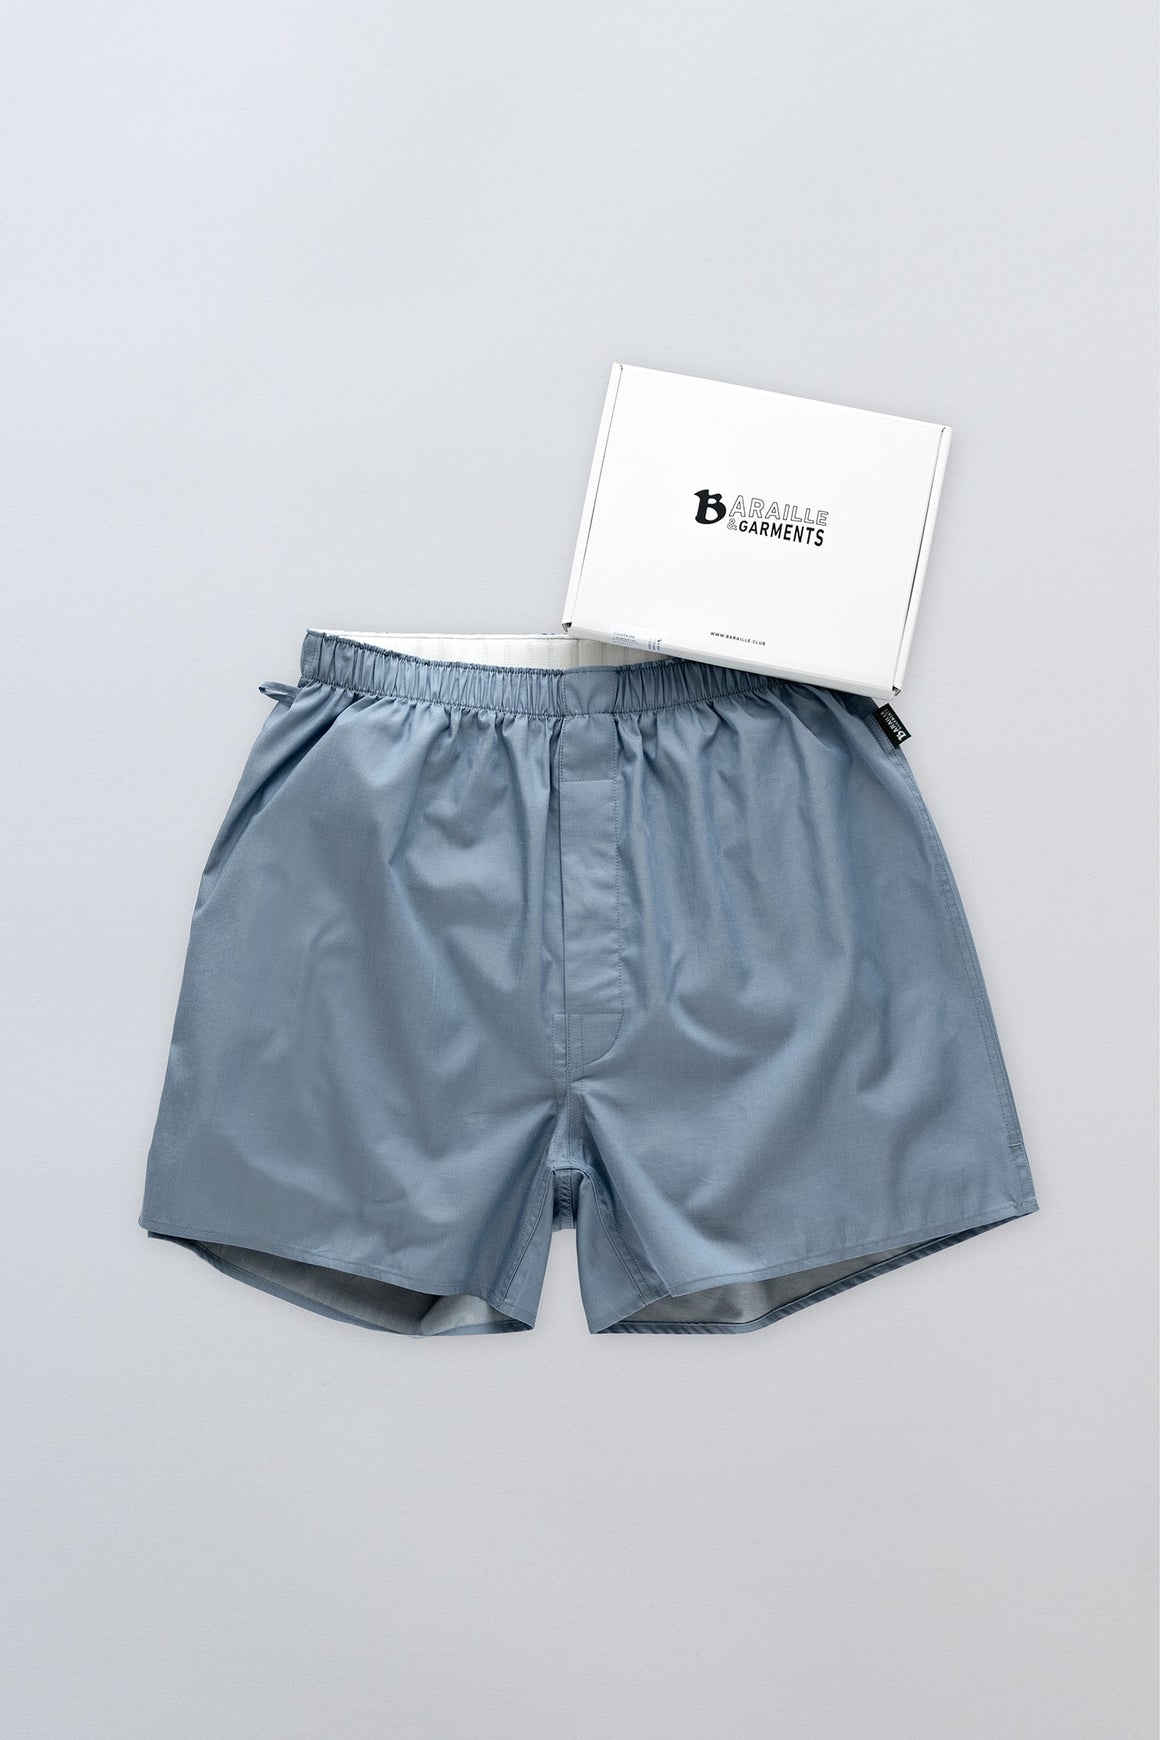 アメリカンシーアイランドコットントランクス | SPEYSIDE ASIC Shorts